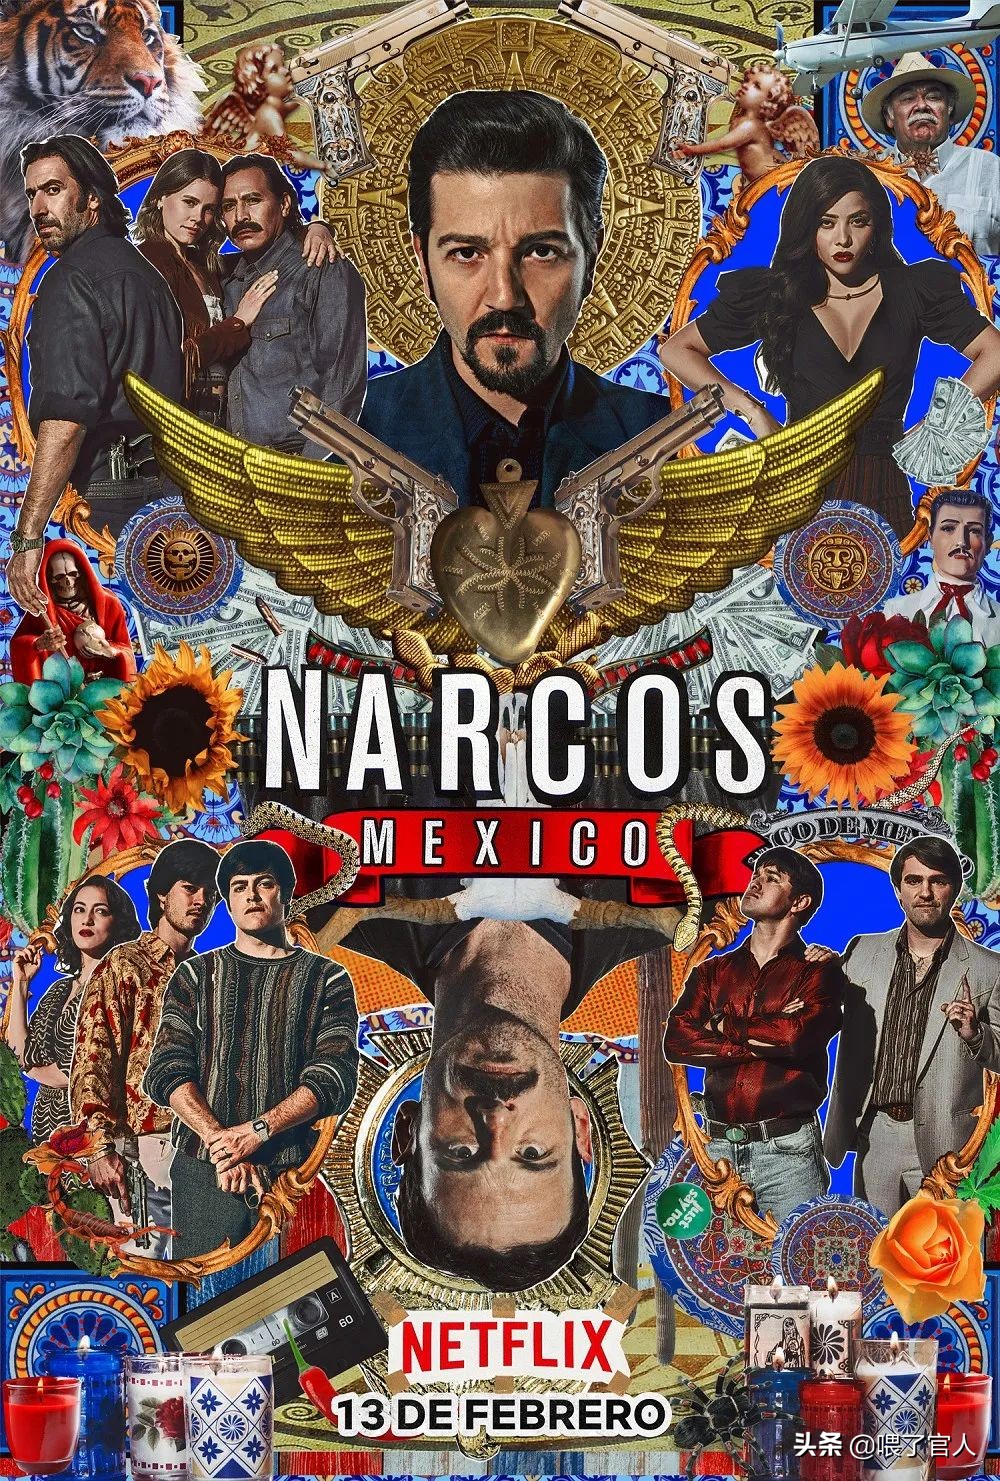 “麻药中毒者：墨西哥”第二季登场，看到大麻药贩毒者直接威胁总统，真是爽快。